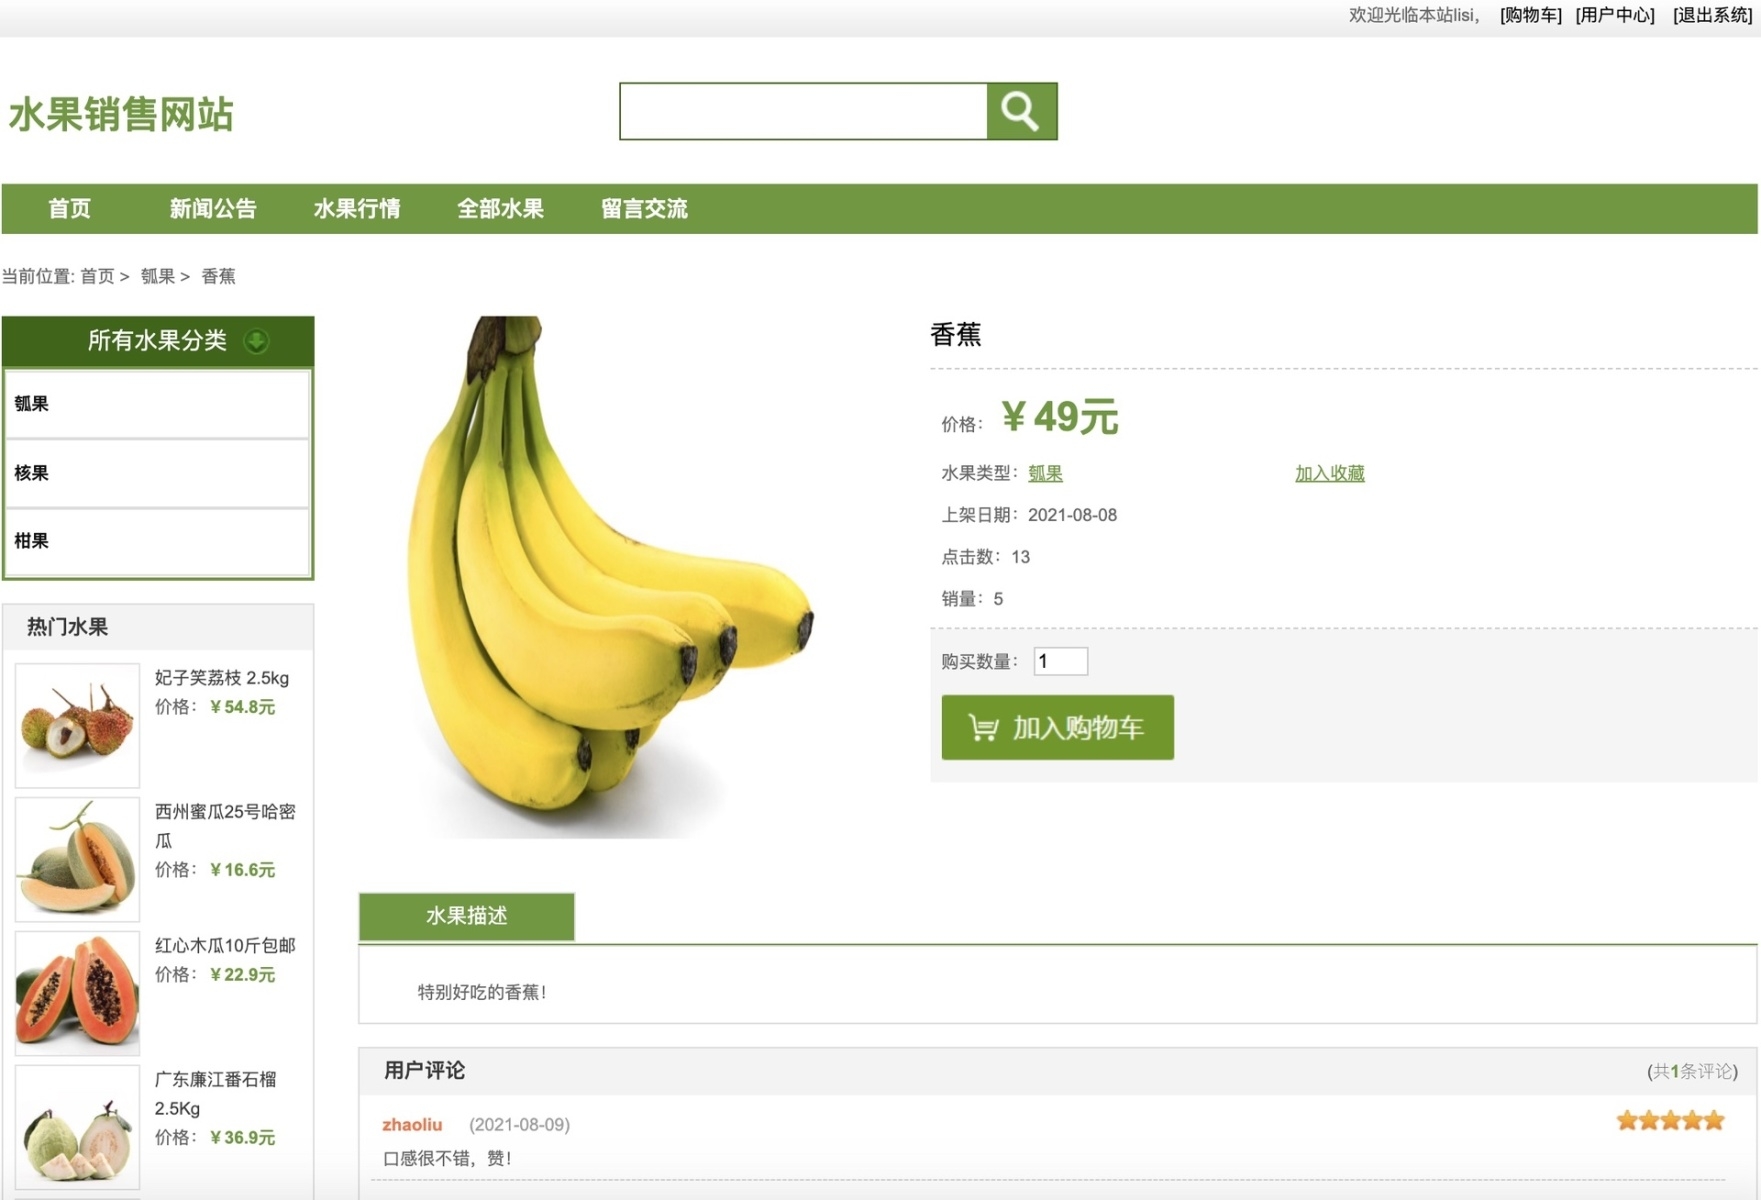 java 水果销售网站 水果销售系统 水果商城 水果超市系统